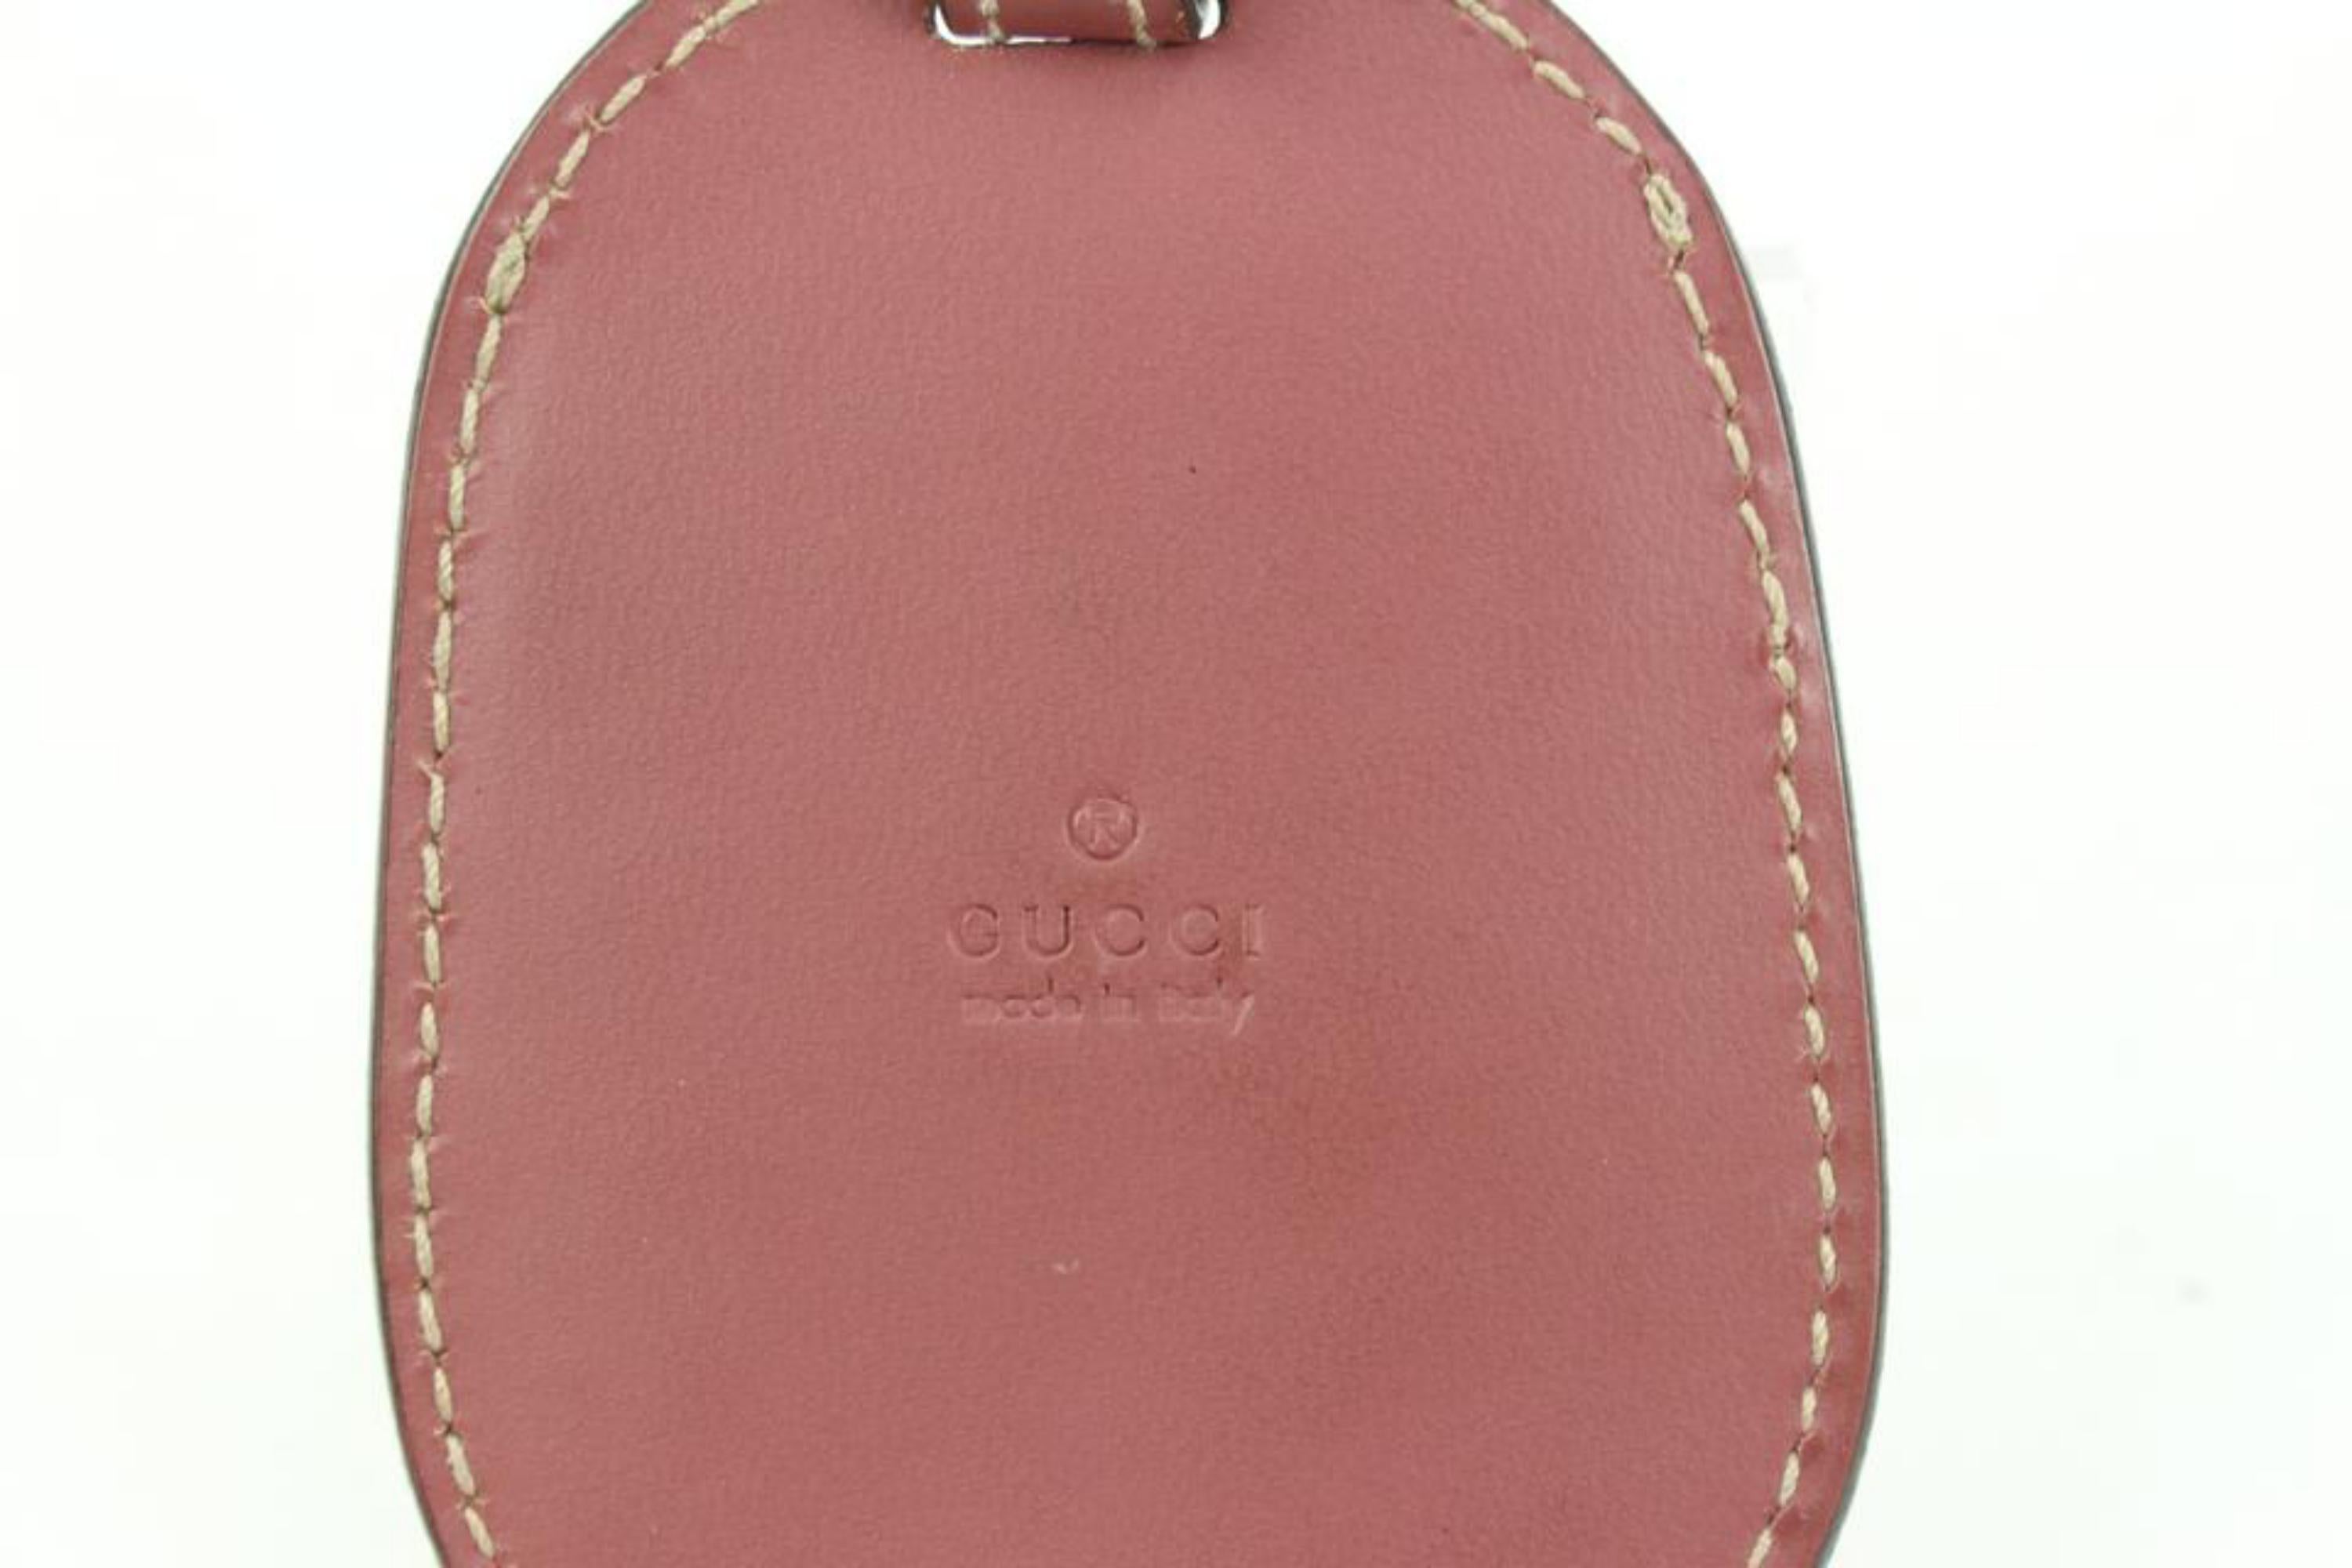 Marron Gucci - Breloque de sac à main clochette en cuir mauve avec étiquette de bagage 20g427 en vente